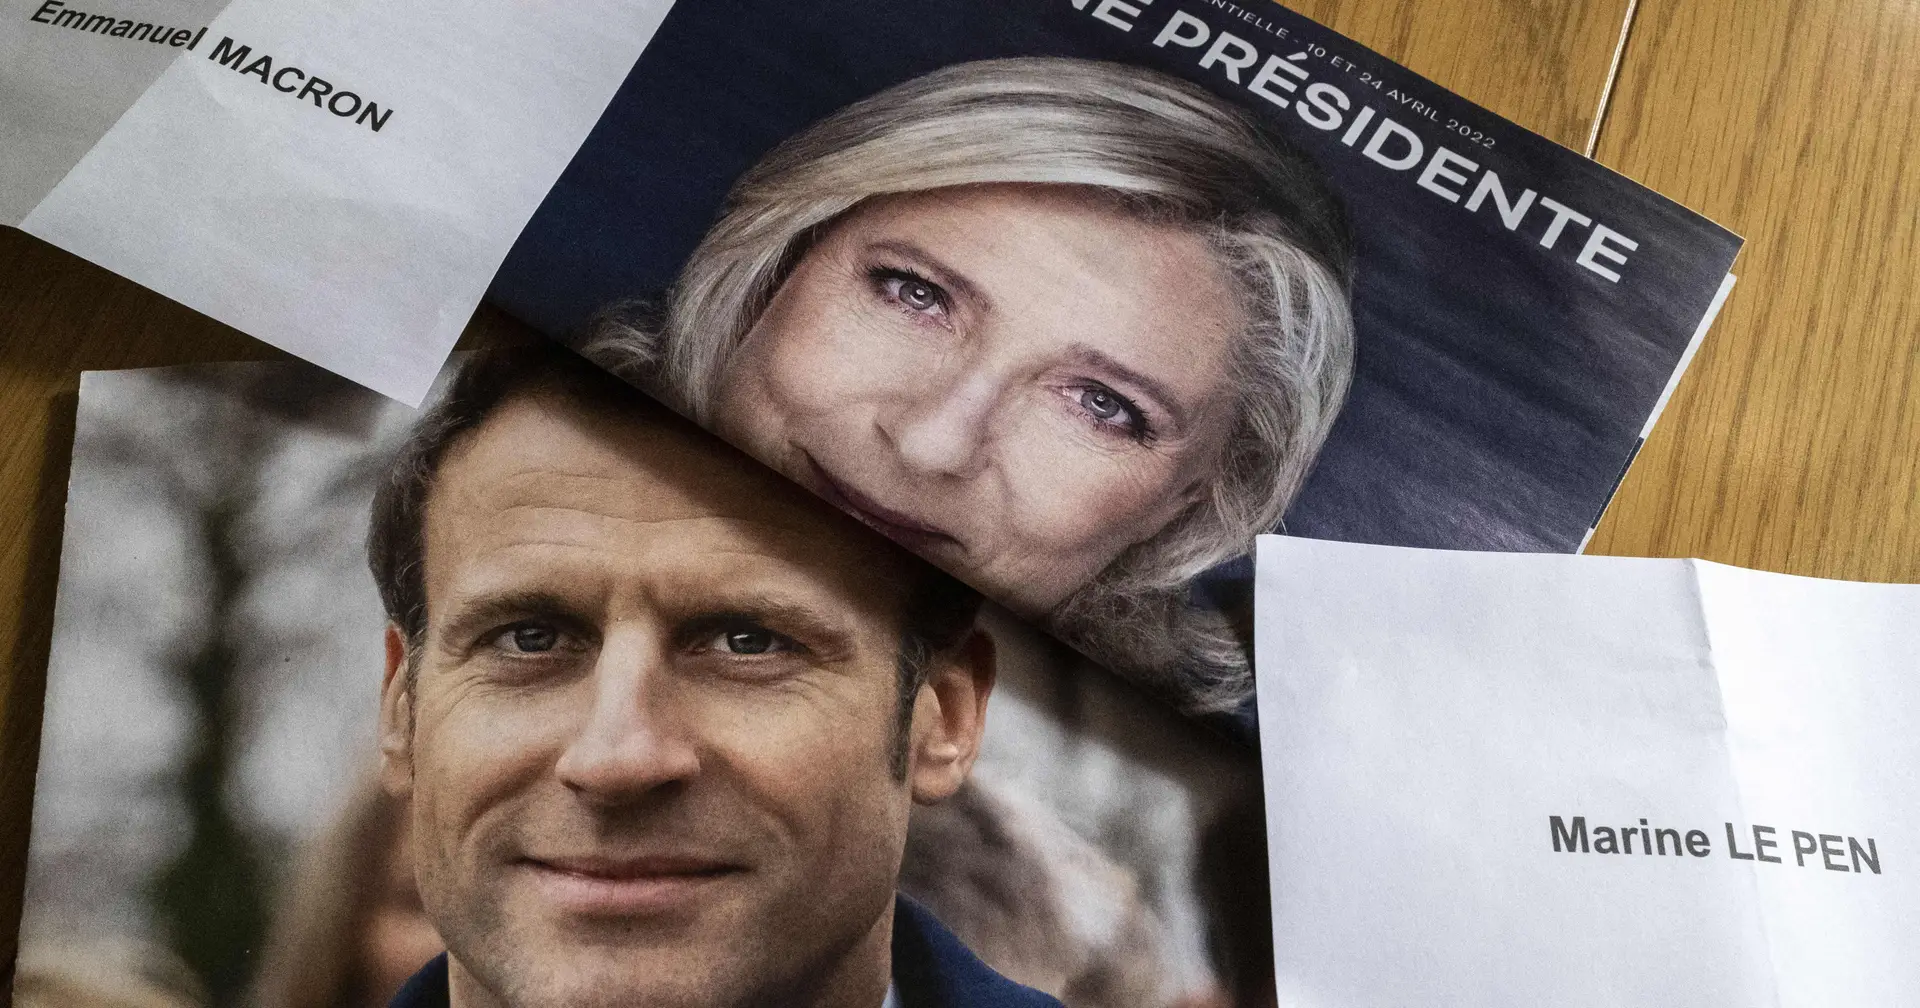 Duas Franças, dois projetos antagónicos. Conheça os programas de Emmanuel Macron e Marine Le Pen